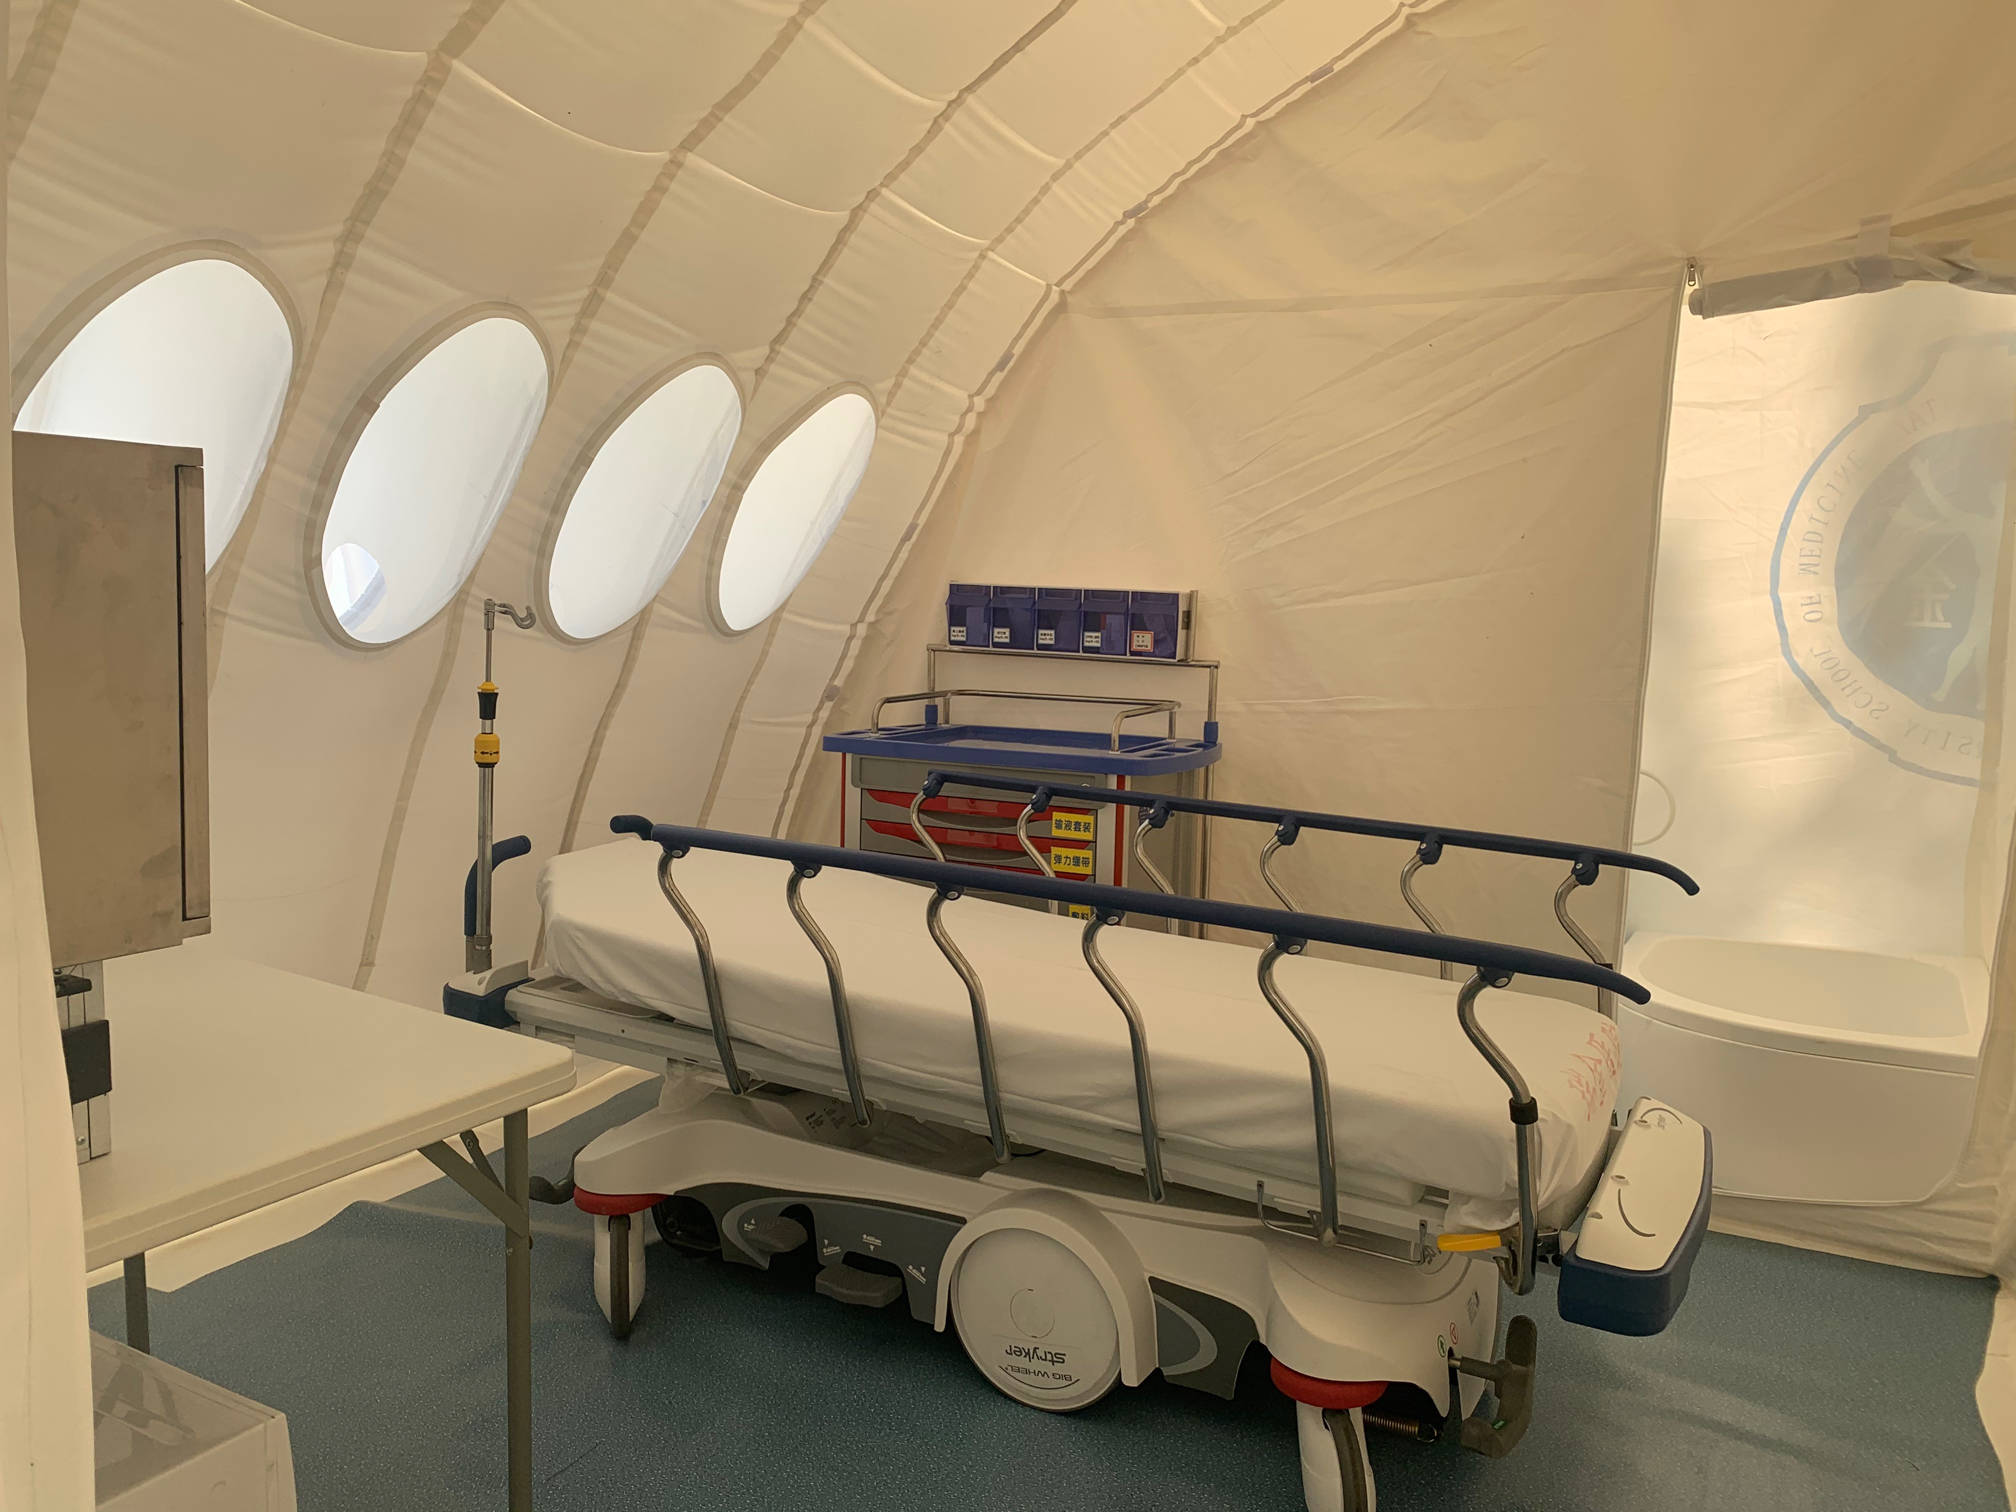 新型方舱医院亮相上海:有正负压隔离病房还可折叠空运